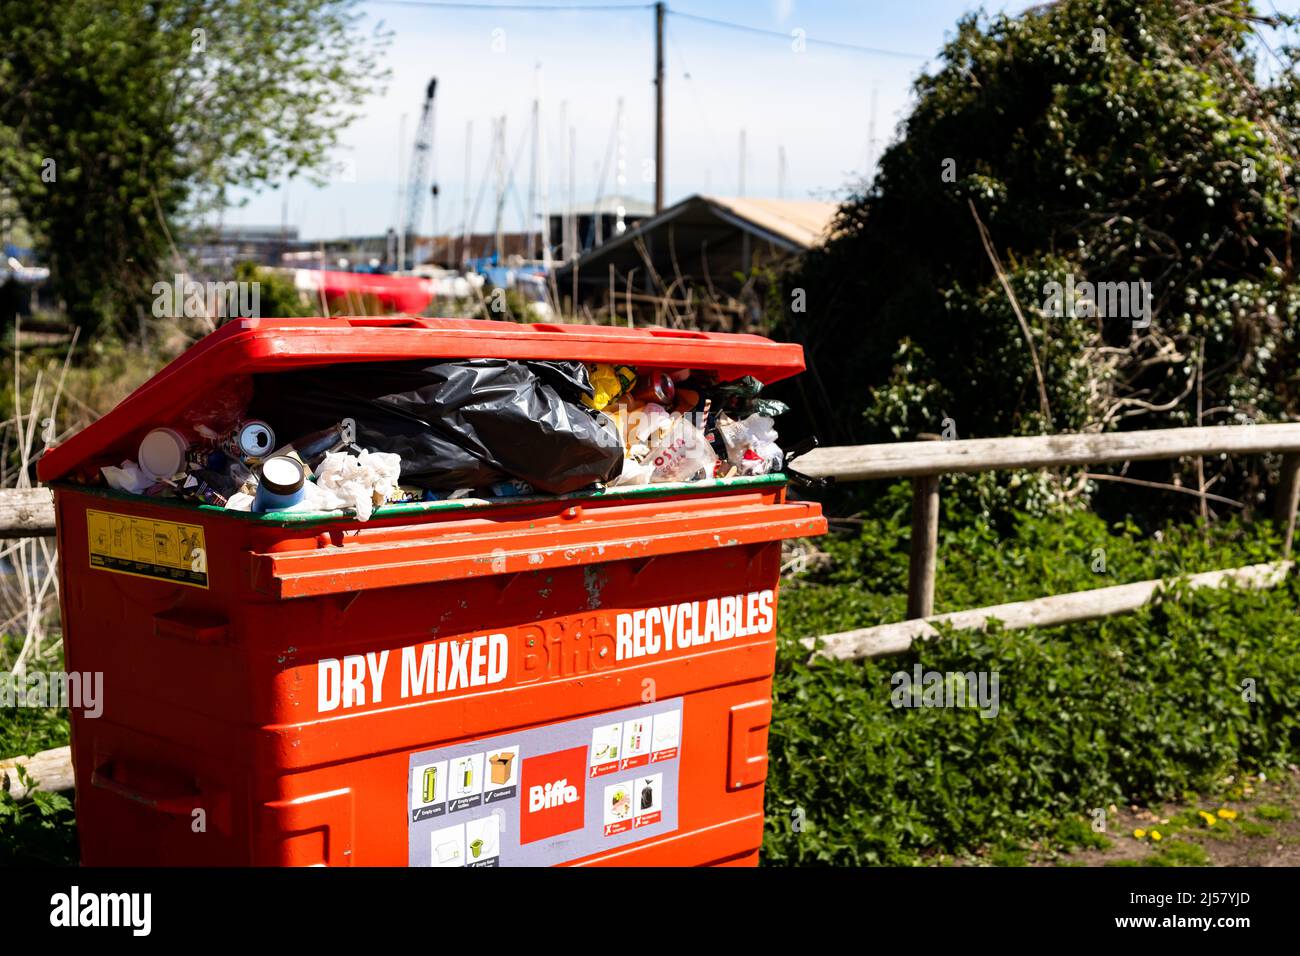 Woodbridge Suffolk UK 20 avril 2022 : une poubelle à roulettes publique débordant de recyclage qui n'a pas été collectée et pose un problème Banque D'Images